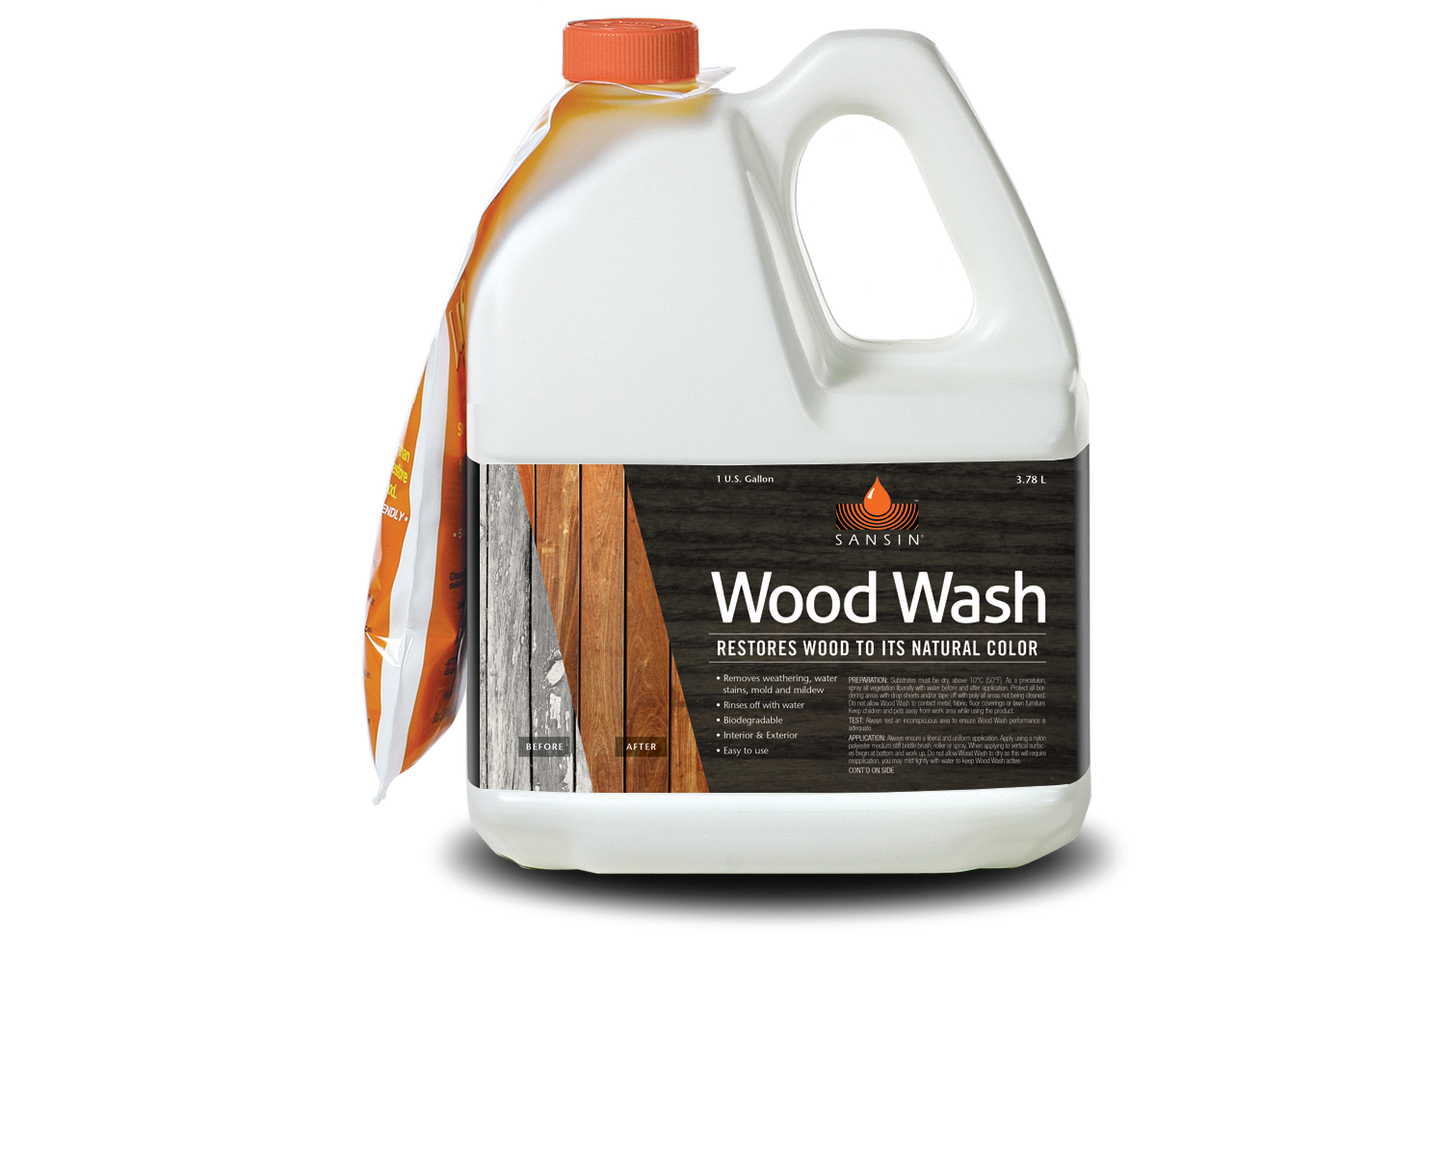 Wood Wash